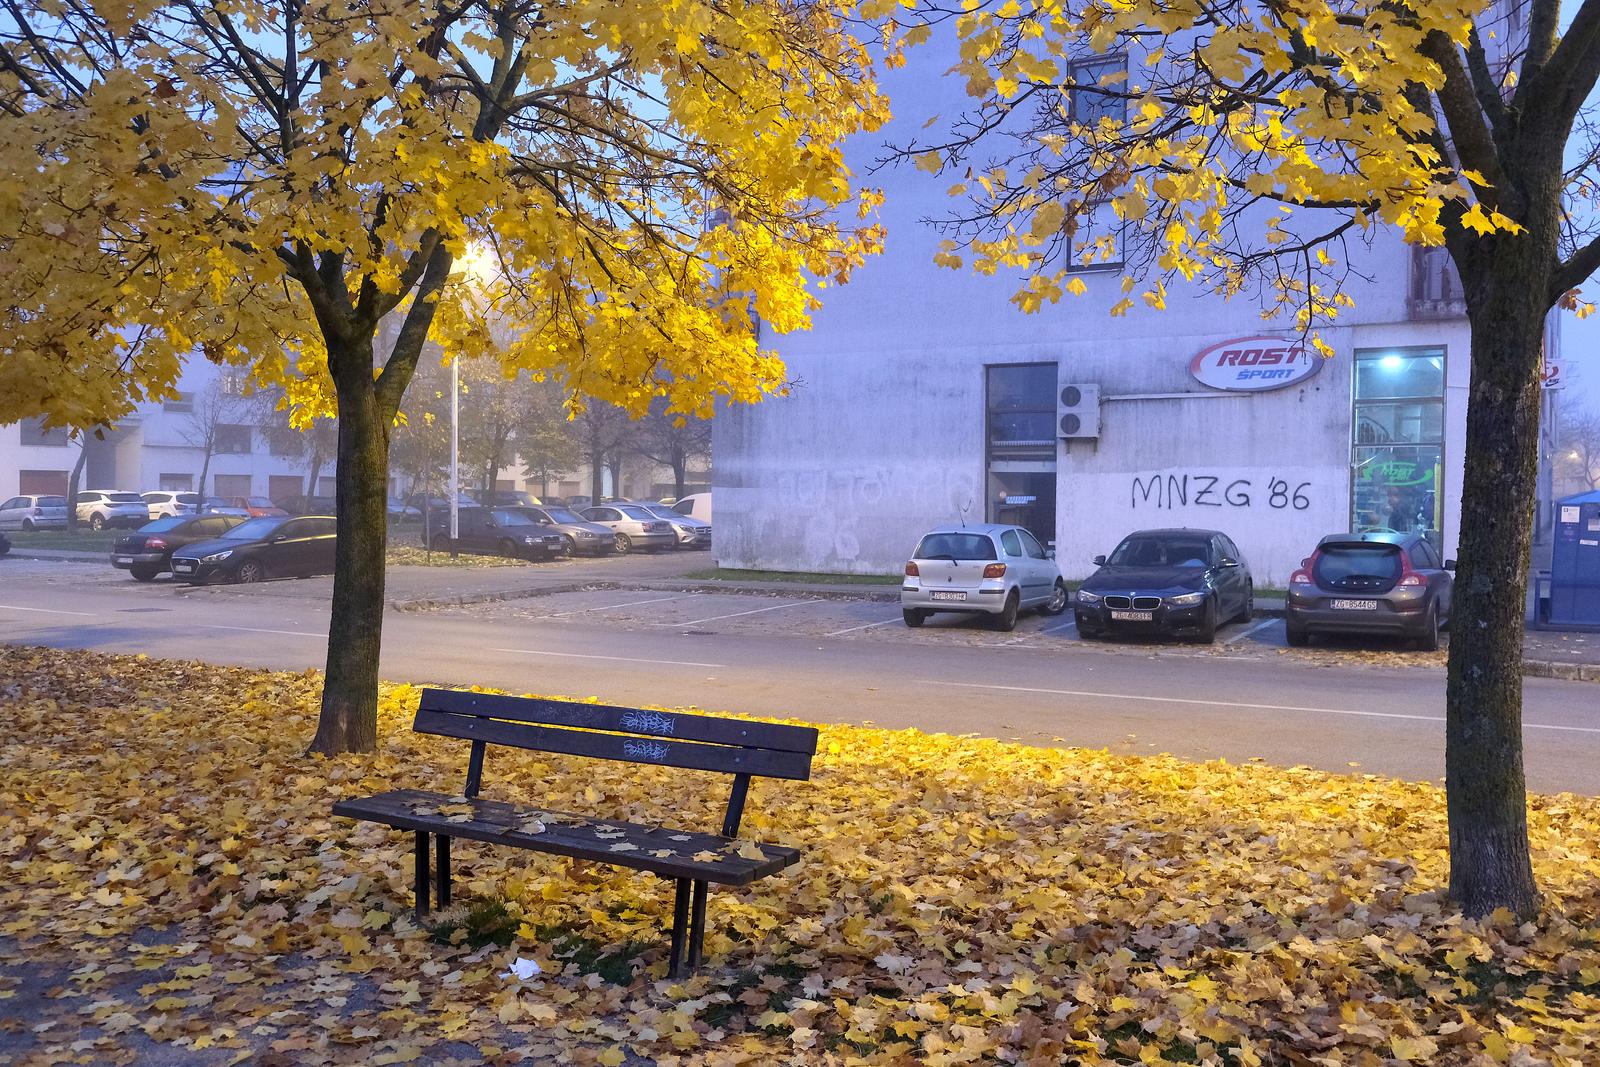 13.11.2021., Zagreb - Zagreb se budi uz prognozu DHMZ-a: Umjereno do pretezno oblacno, ujutro na sirem podrucju grada lokalno magla, a u drugom dijelu dana te osobito u noci povremeno malo kise. Vjetar slab, u okolnom gorju do umjeren juzni i jugoistocni,  najvisa dnevna temperatura od 10 do 12 °C.